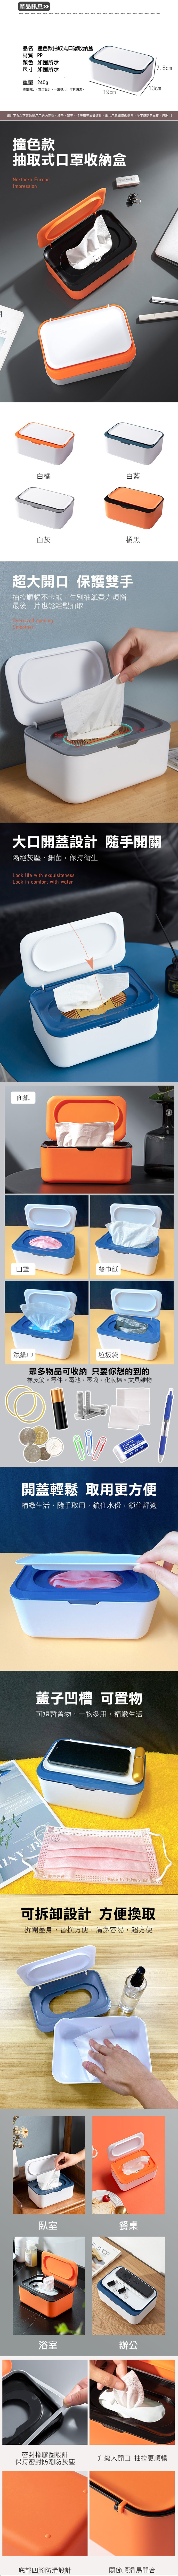 抽取式口罩收納盒(素色/撞色) 口罩盒 收納盒 濕紙巾收納盒 面紙盒 